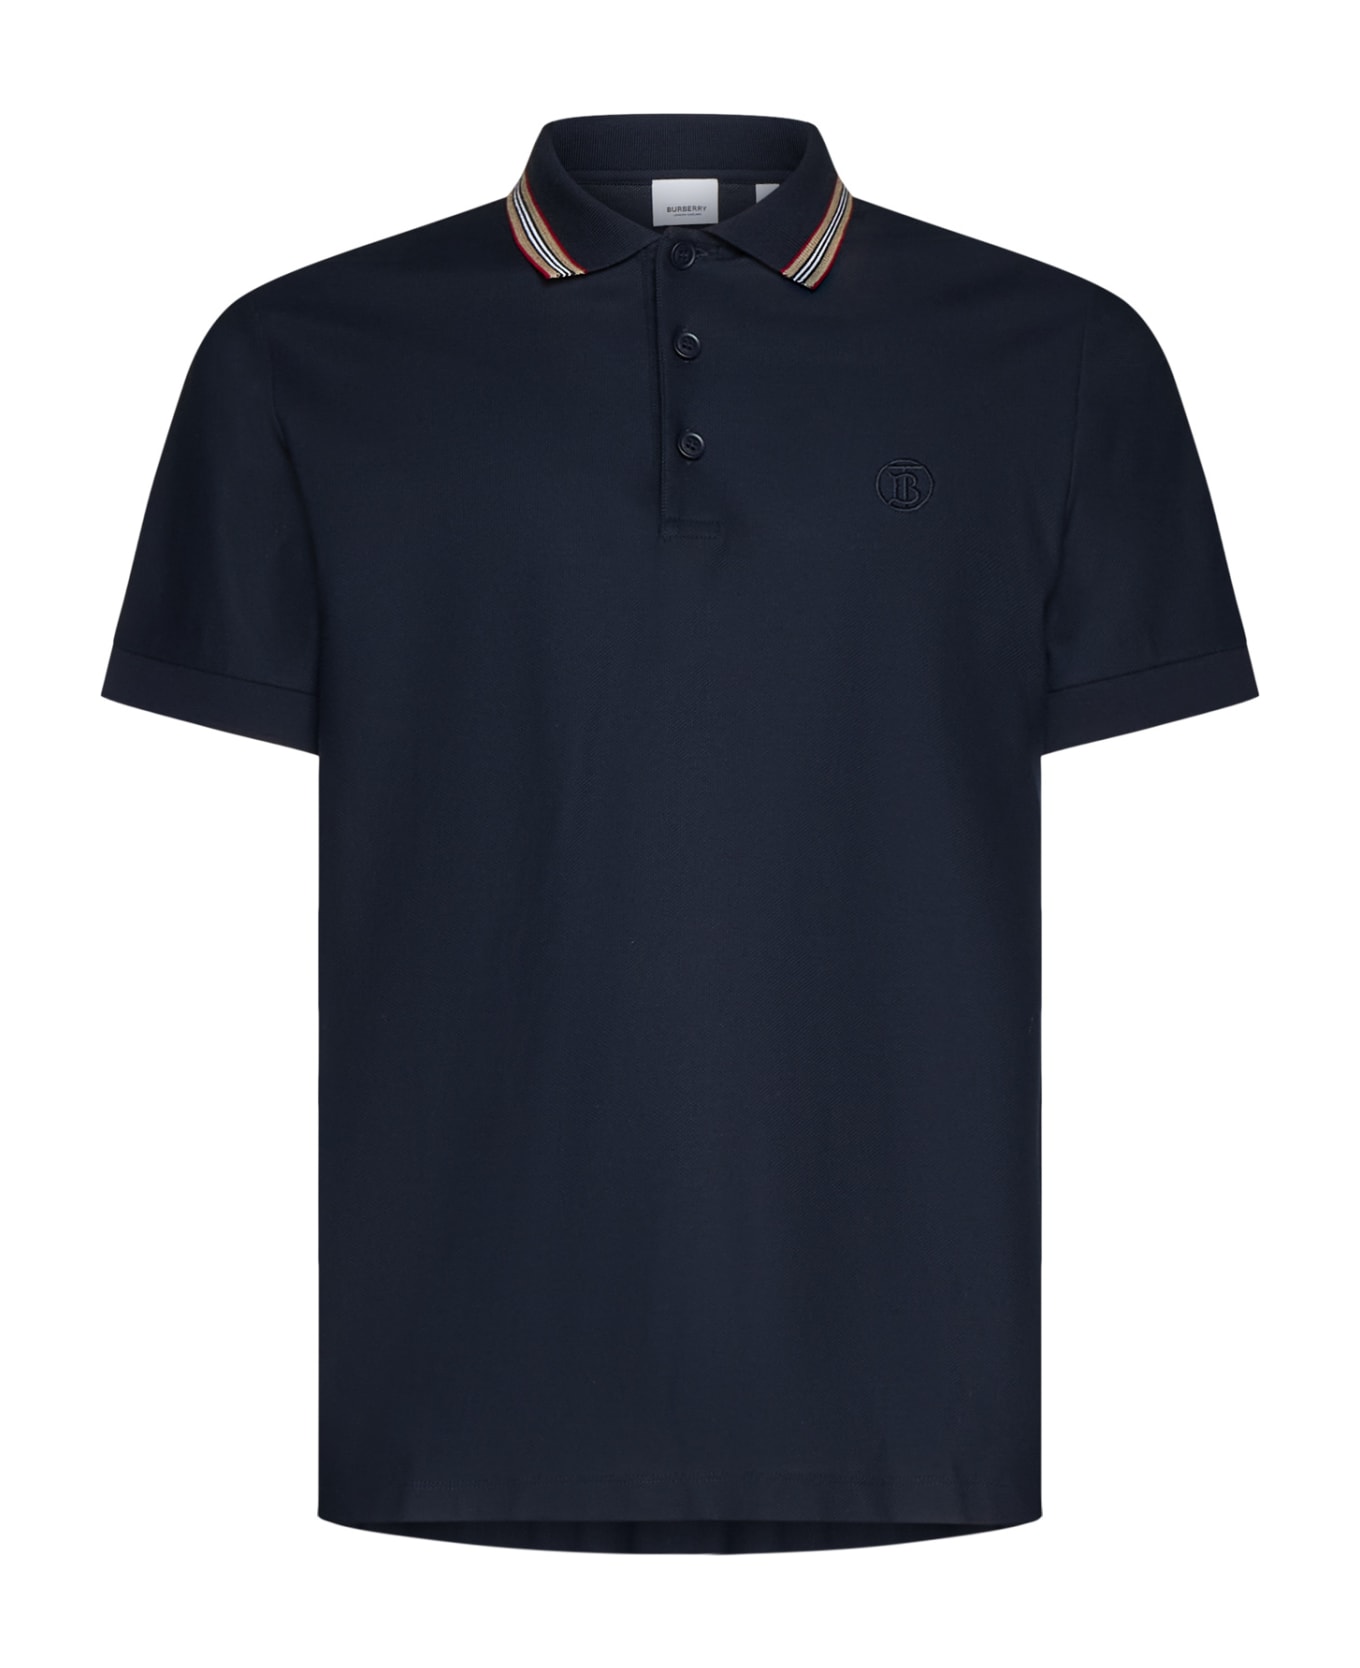 Burberry Polo Shirt - Coal blue